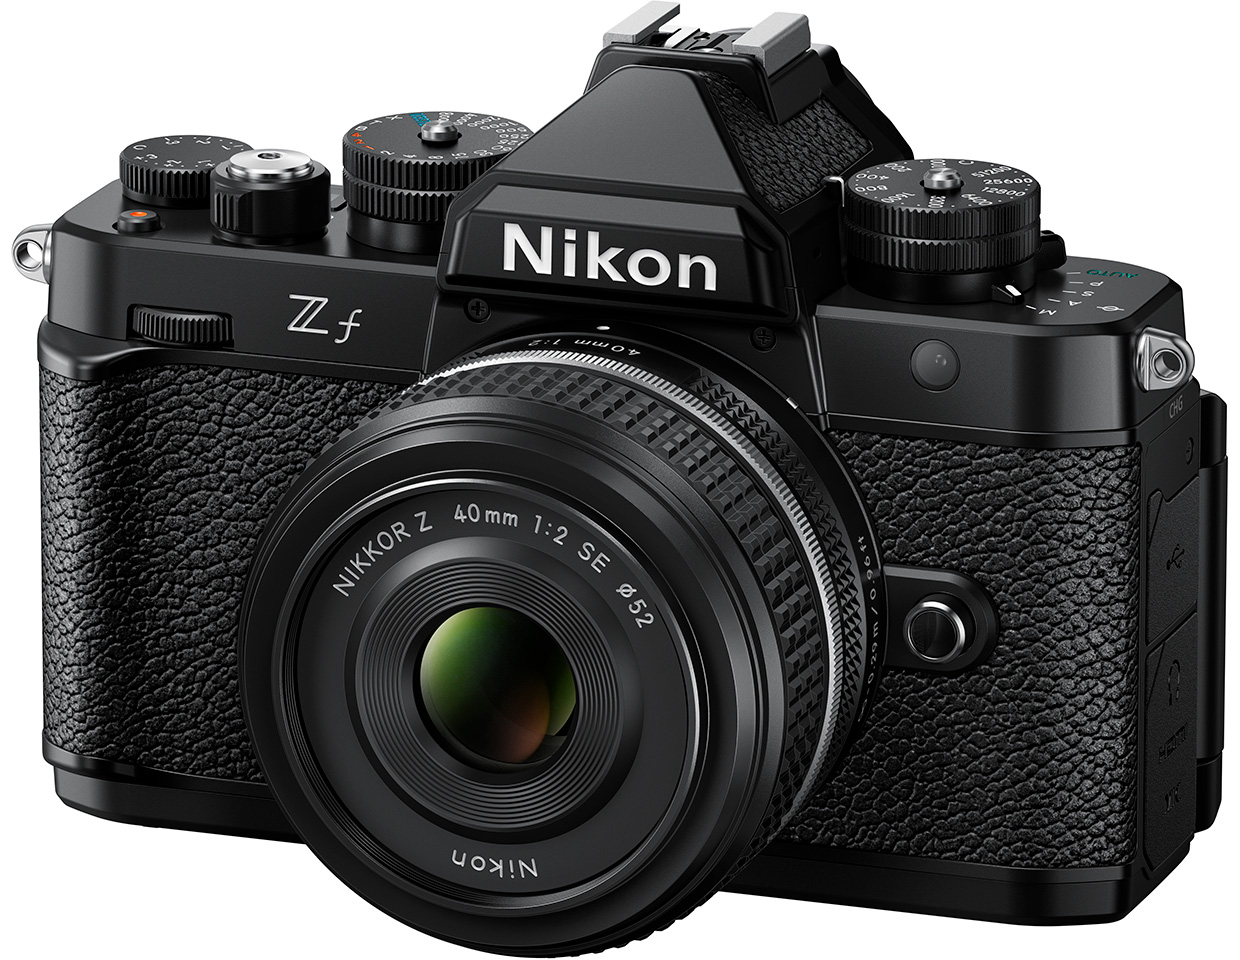 フルサイズミラーレスカメラ「ニコン Z f」を発売 | ニュース | Nikon ...